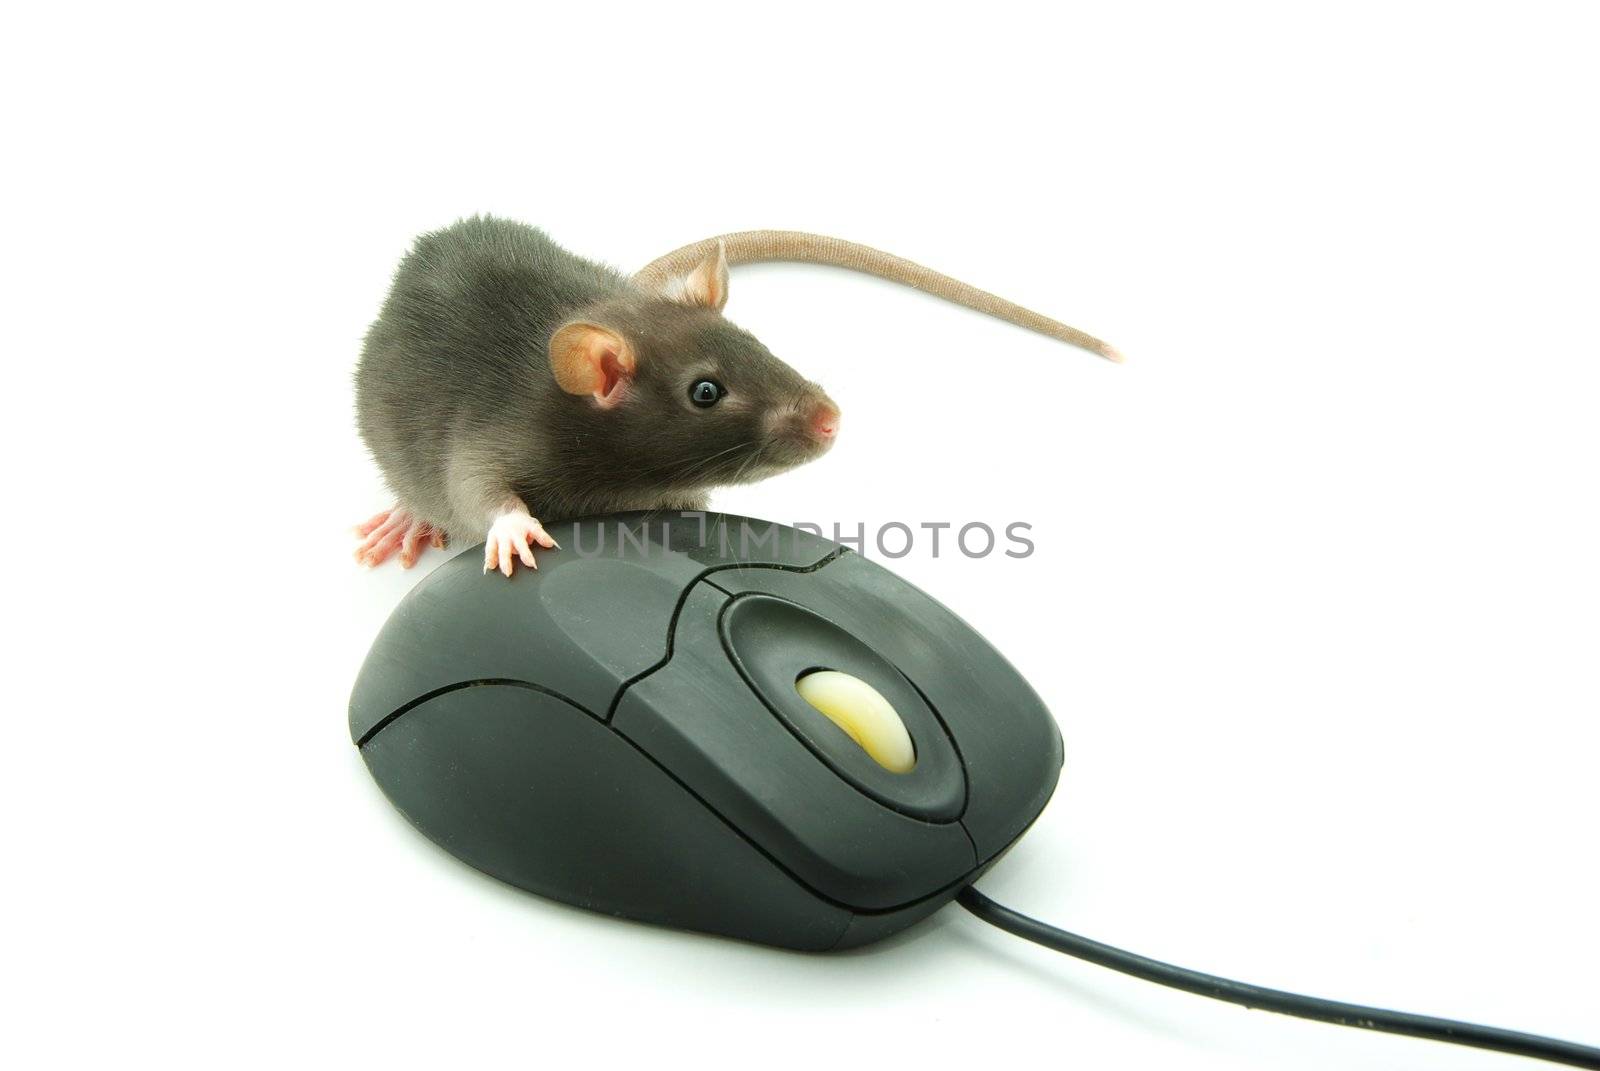  computer mouse  by Pakhnyushchyy